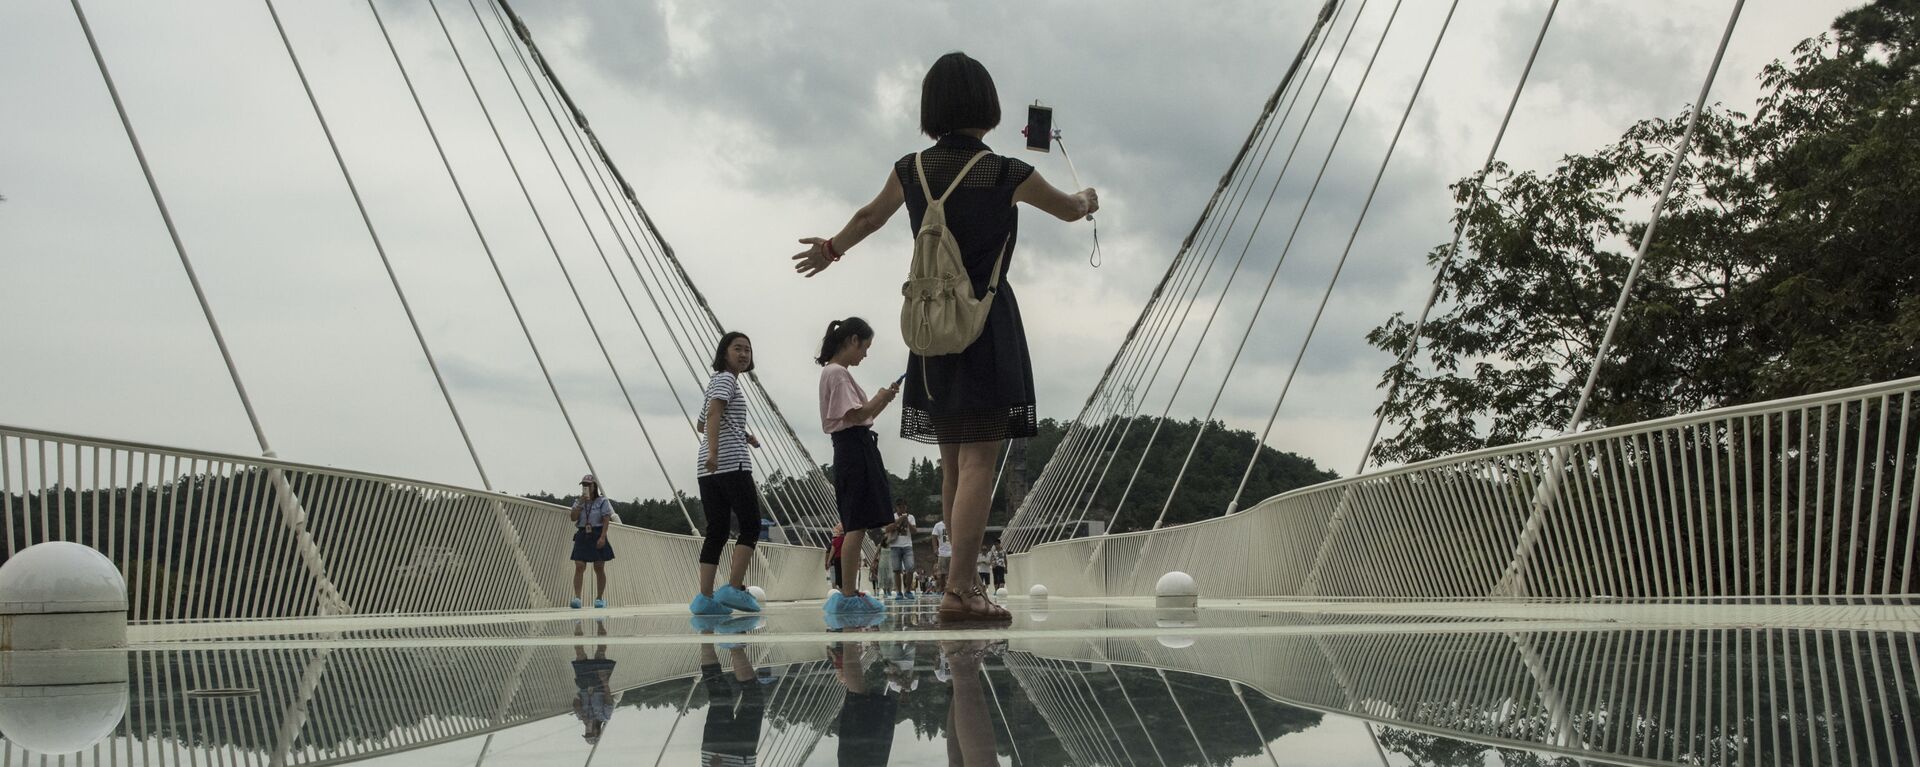 أطول جسر زجاجي في العالم - جسر زجاجي يمر من فوق وادي زانغجياجي بمقاطعة هونان في الصين  - سبوتنيك عربي, 1920, 27.09.2021